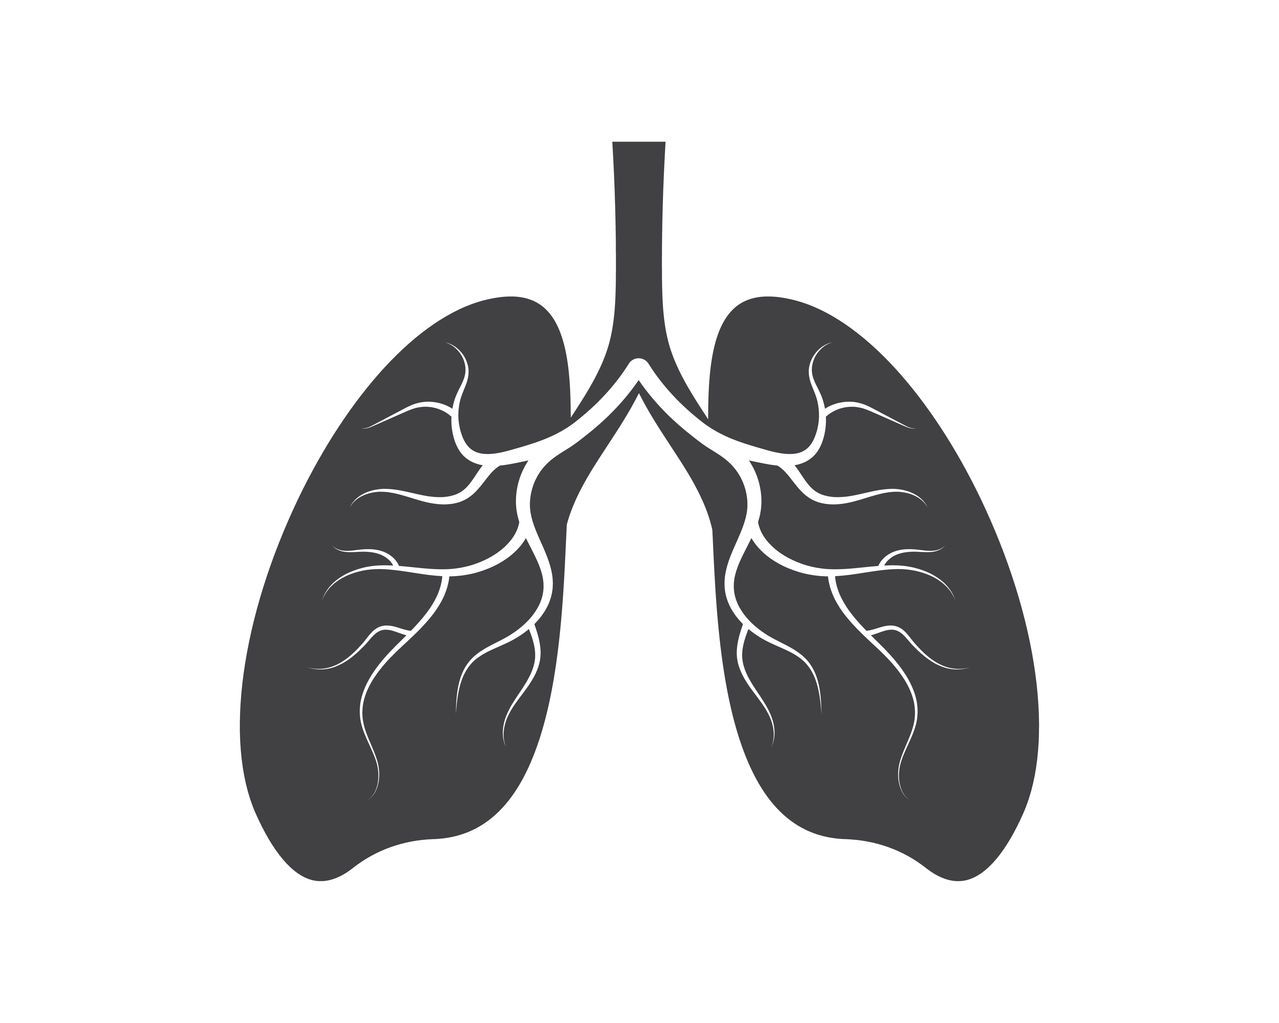 從不吸菸的人一生中得肺癌的機率大約是1%，而持續吸菸的人一生中得肺癌的機率大約是15%。